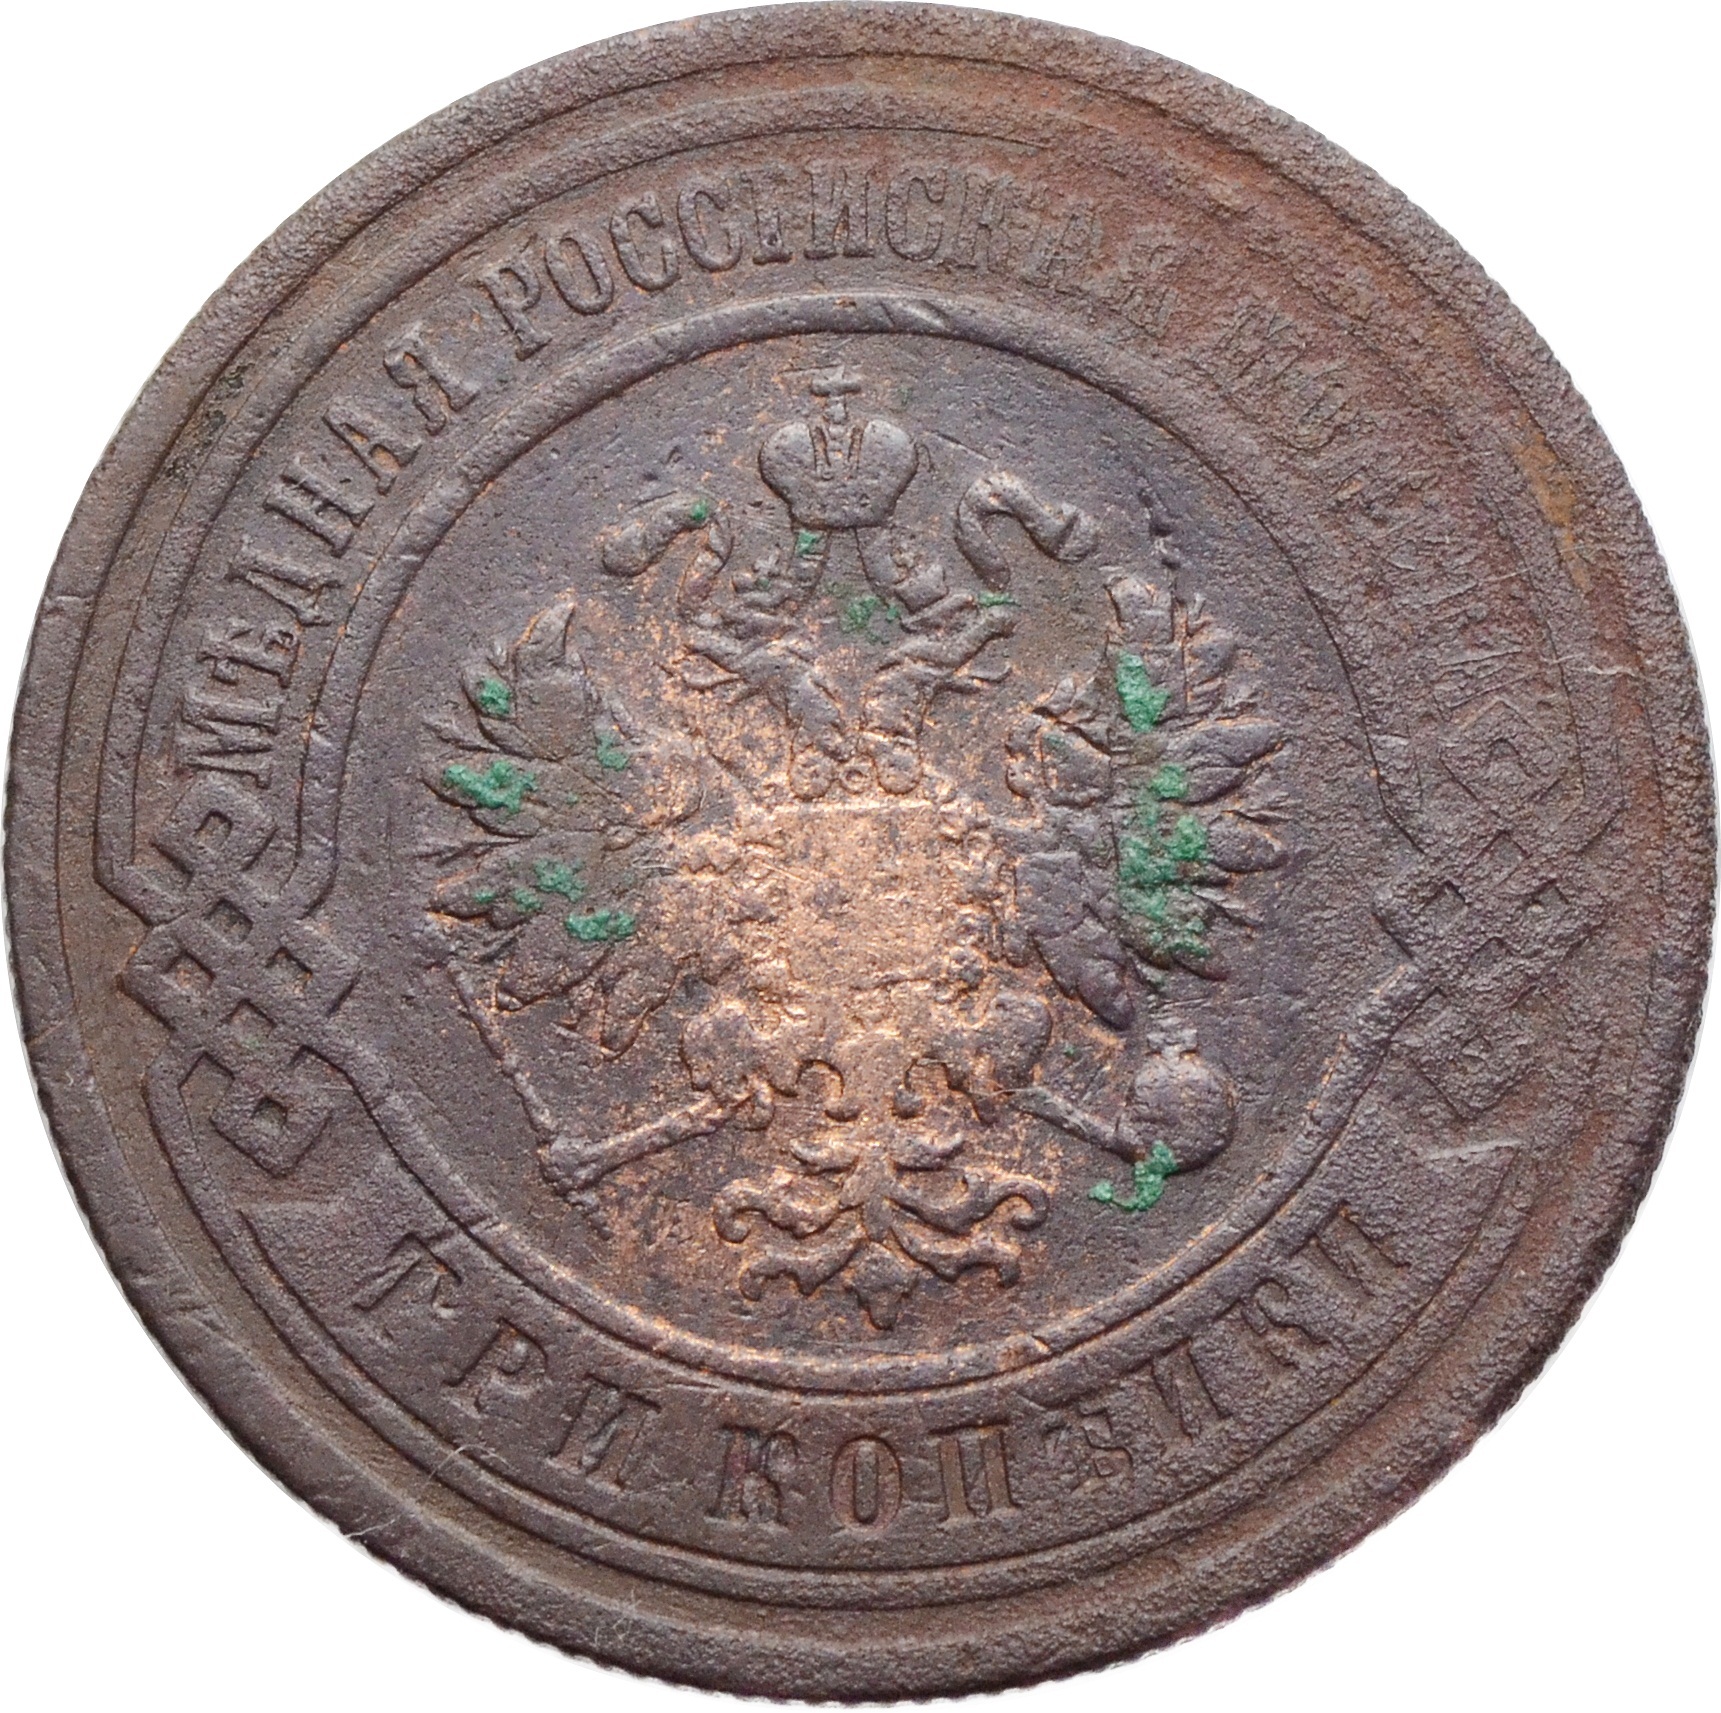 Купить монеты Николая 2: цена монет Николая II (второго)